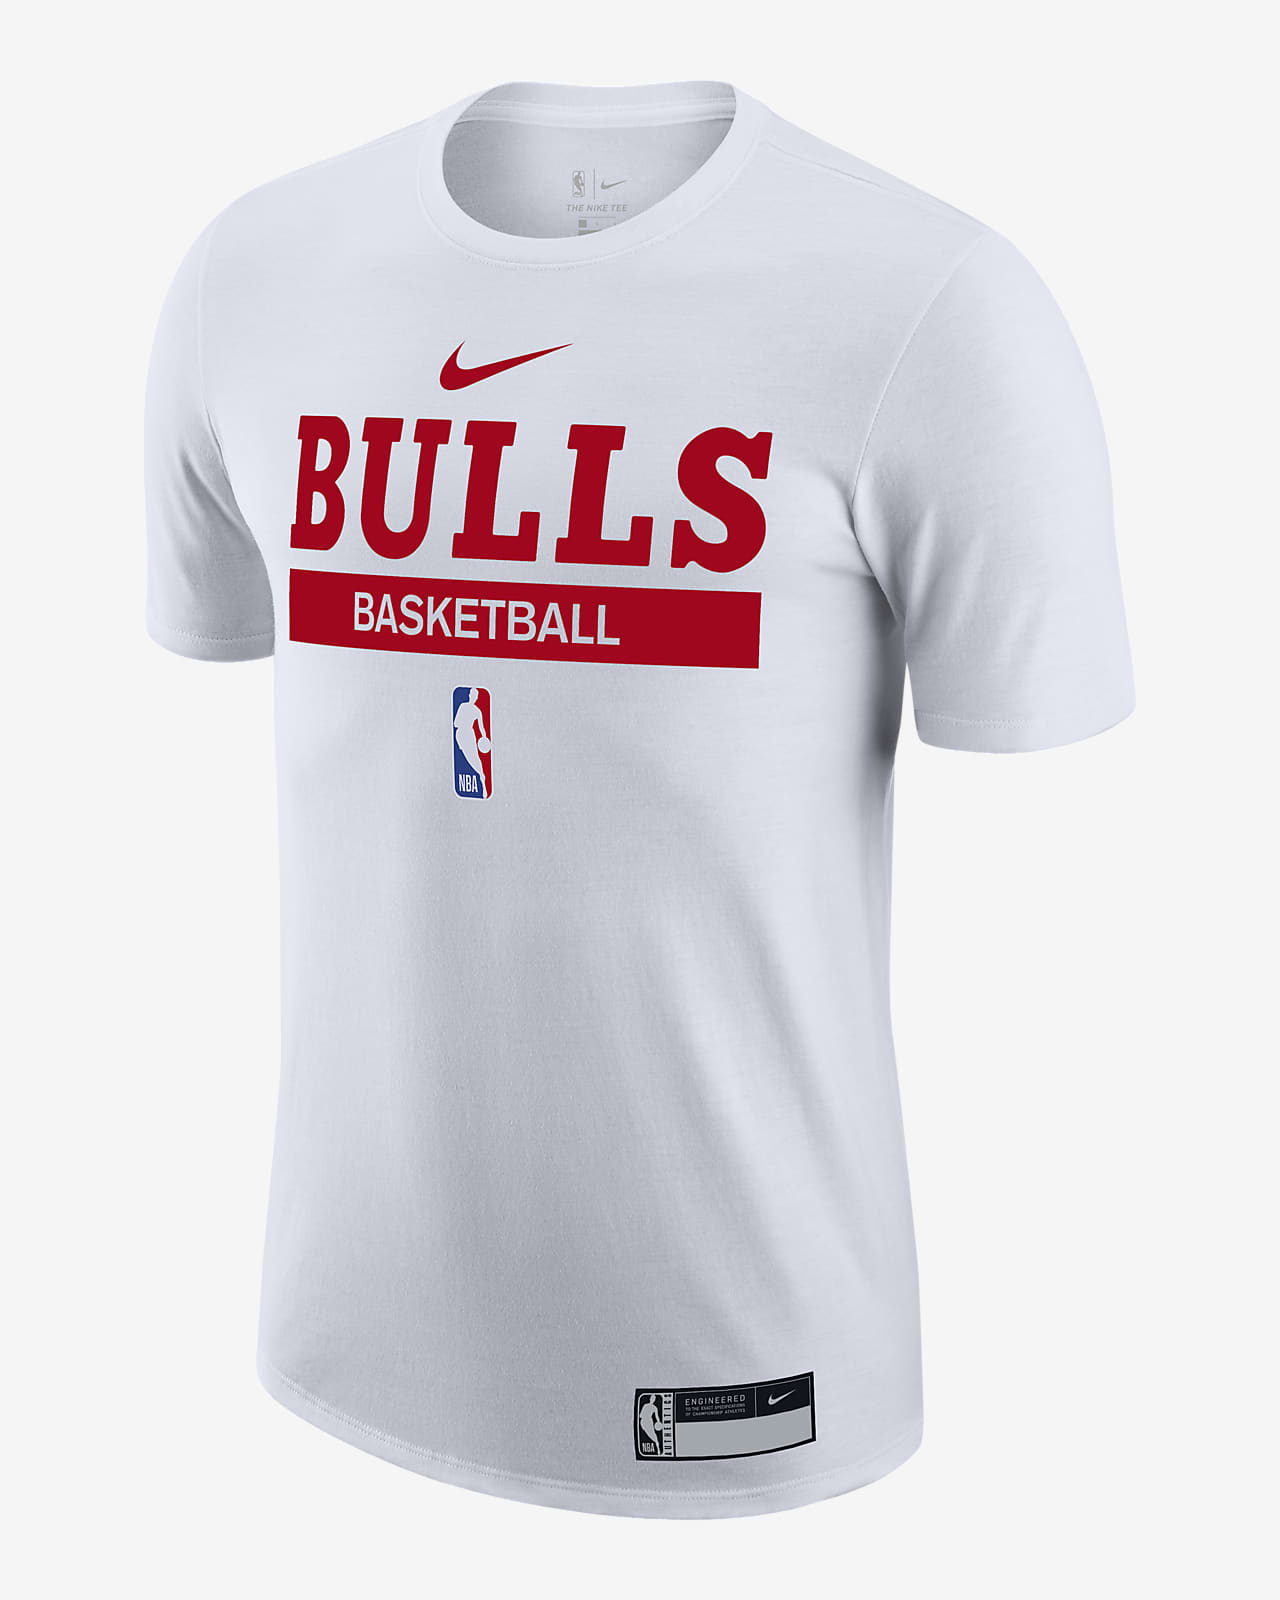 Ordenanza del gobierno análisis Libro Chicago Bulls Camiseta de entrenamiento Dri-FIT Nike de la NBA - Hombre.  Nike ES